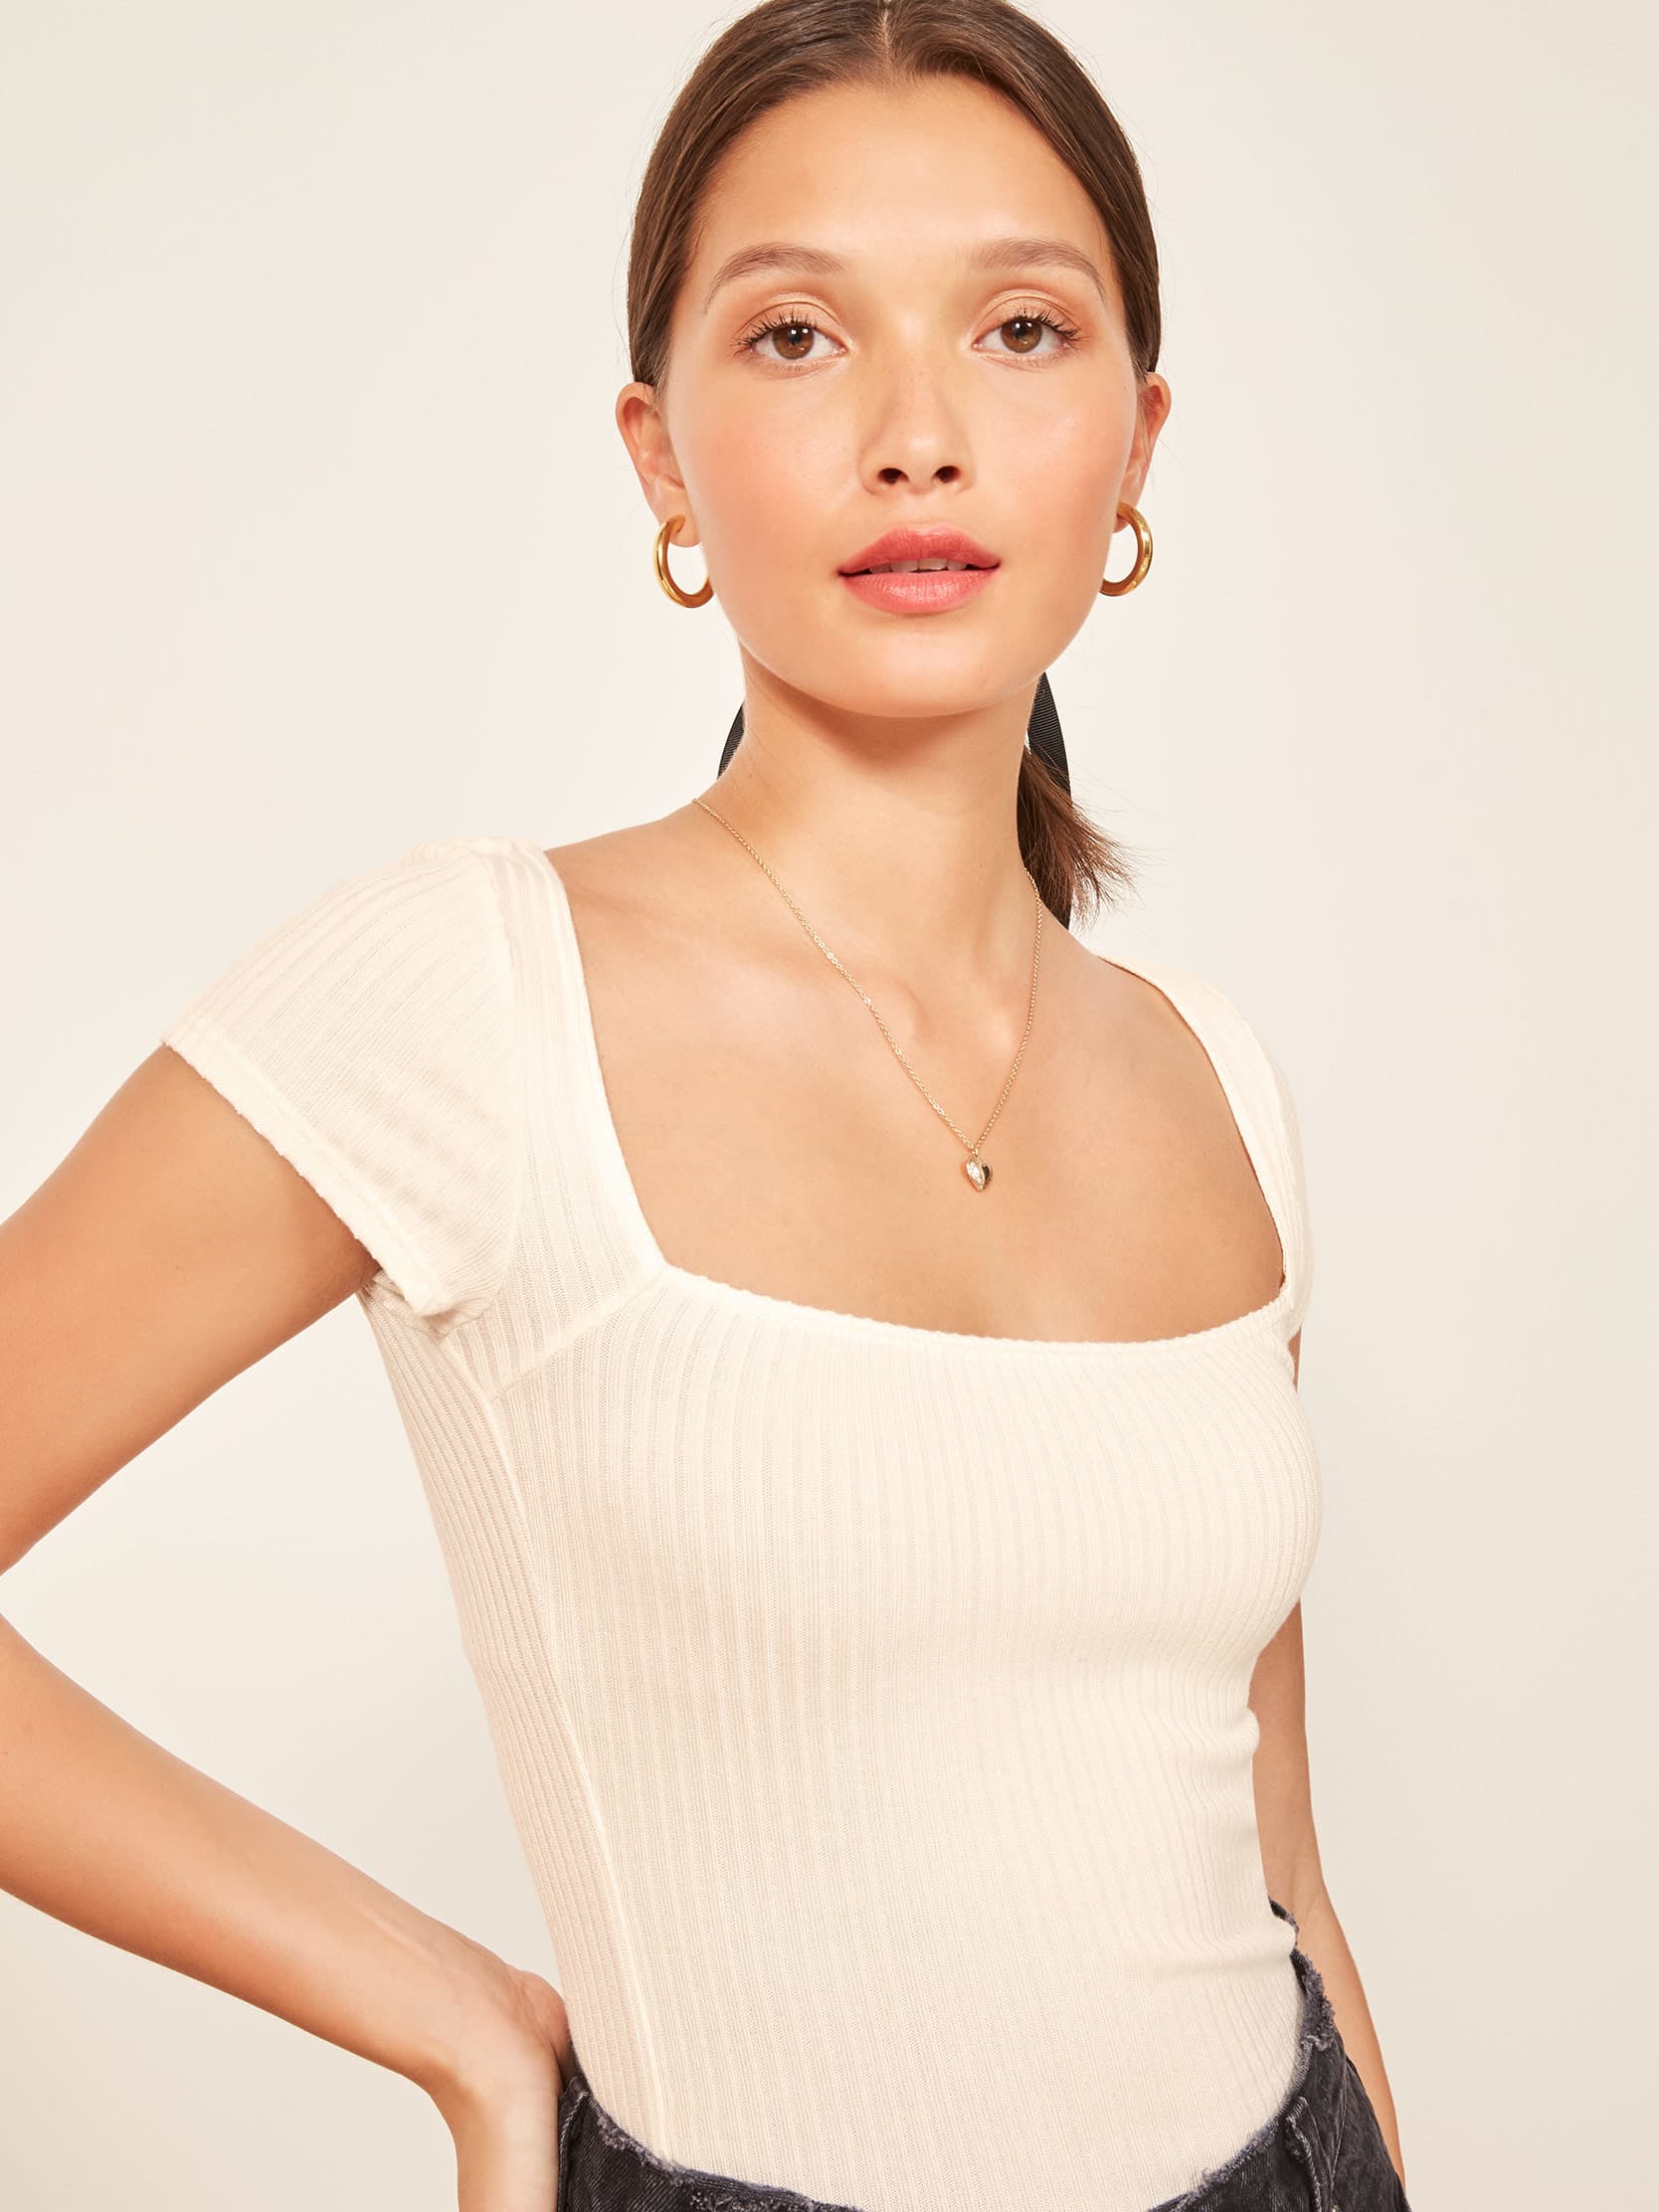 Bardot Top - Short Sleeve Knit | Reformation